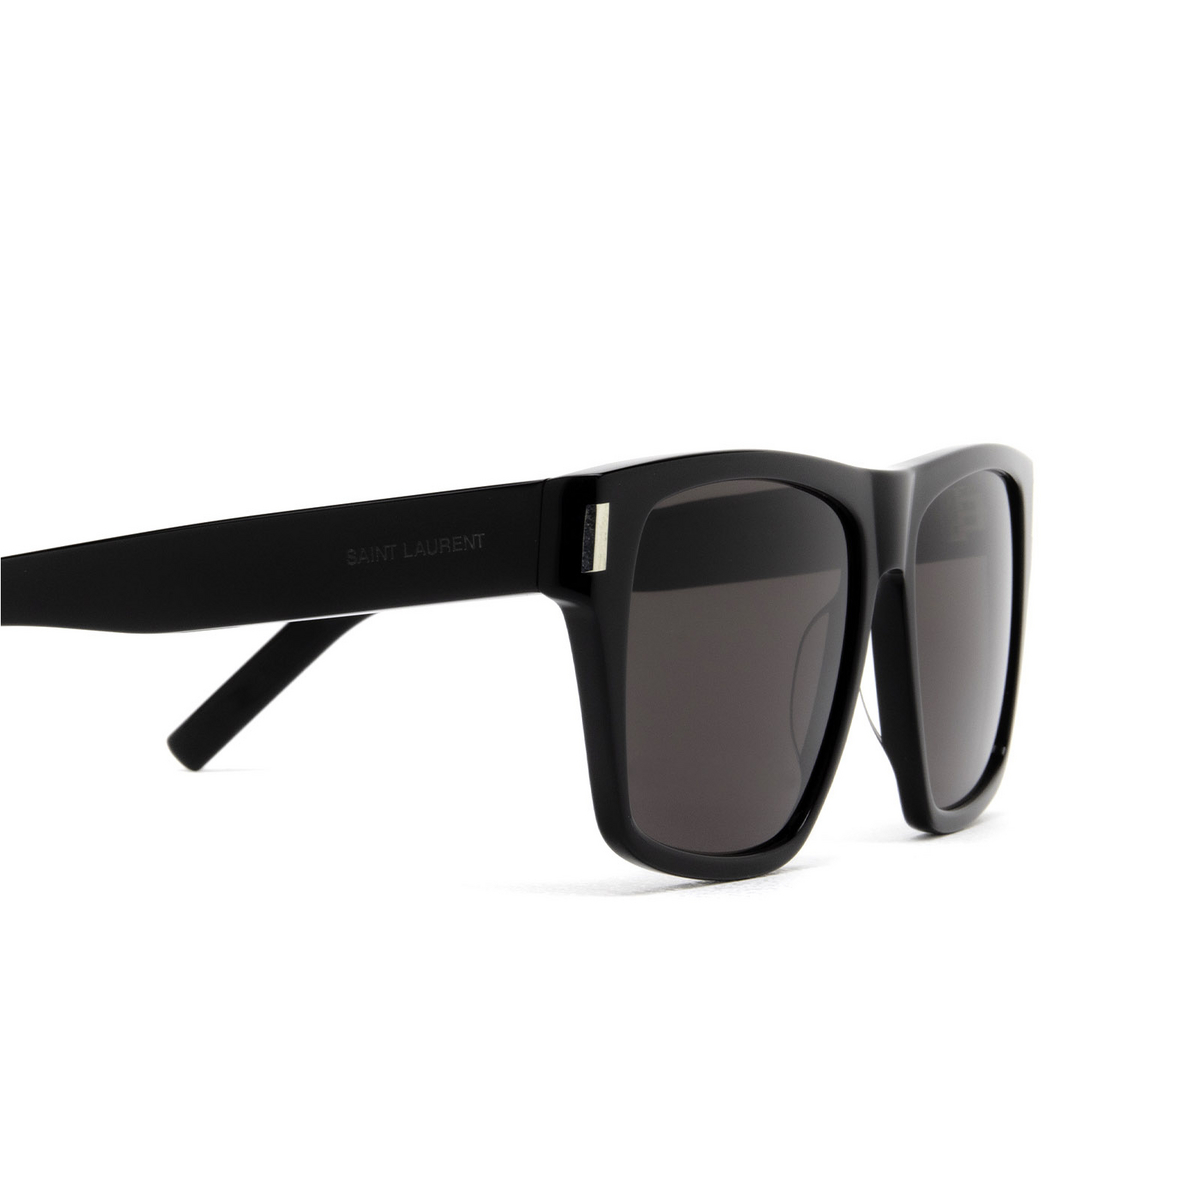 Saint Laurent® Square Sunglasses: SL 424 color Black 001 - 3/3.